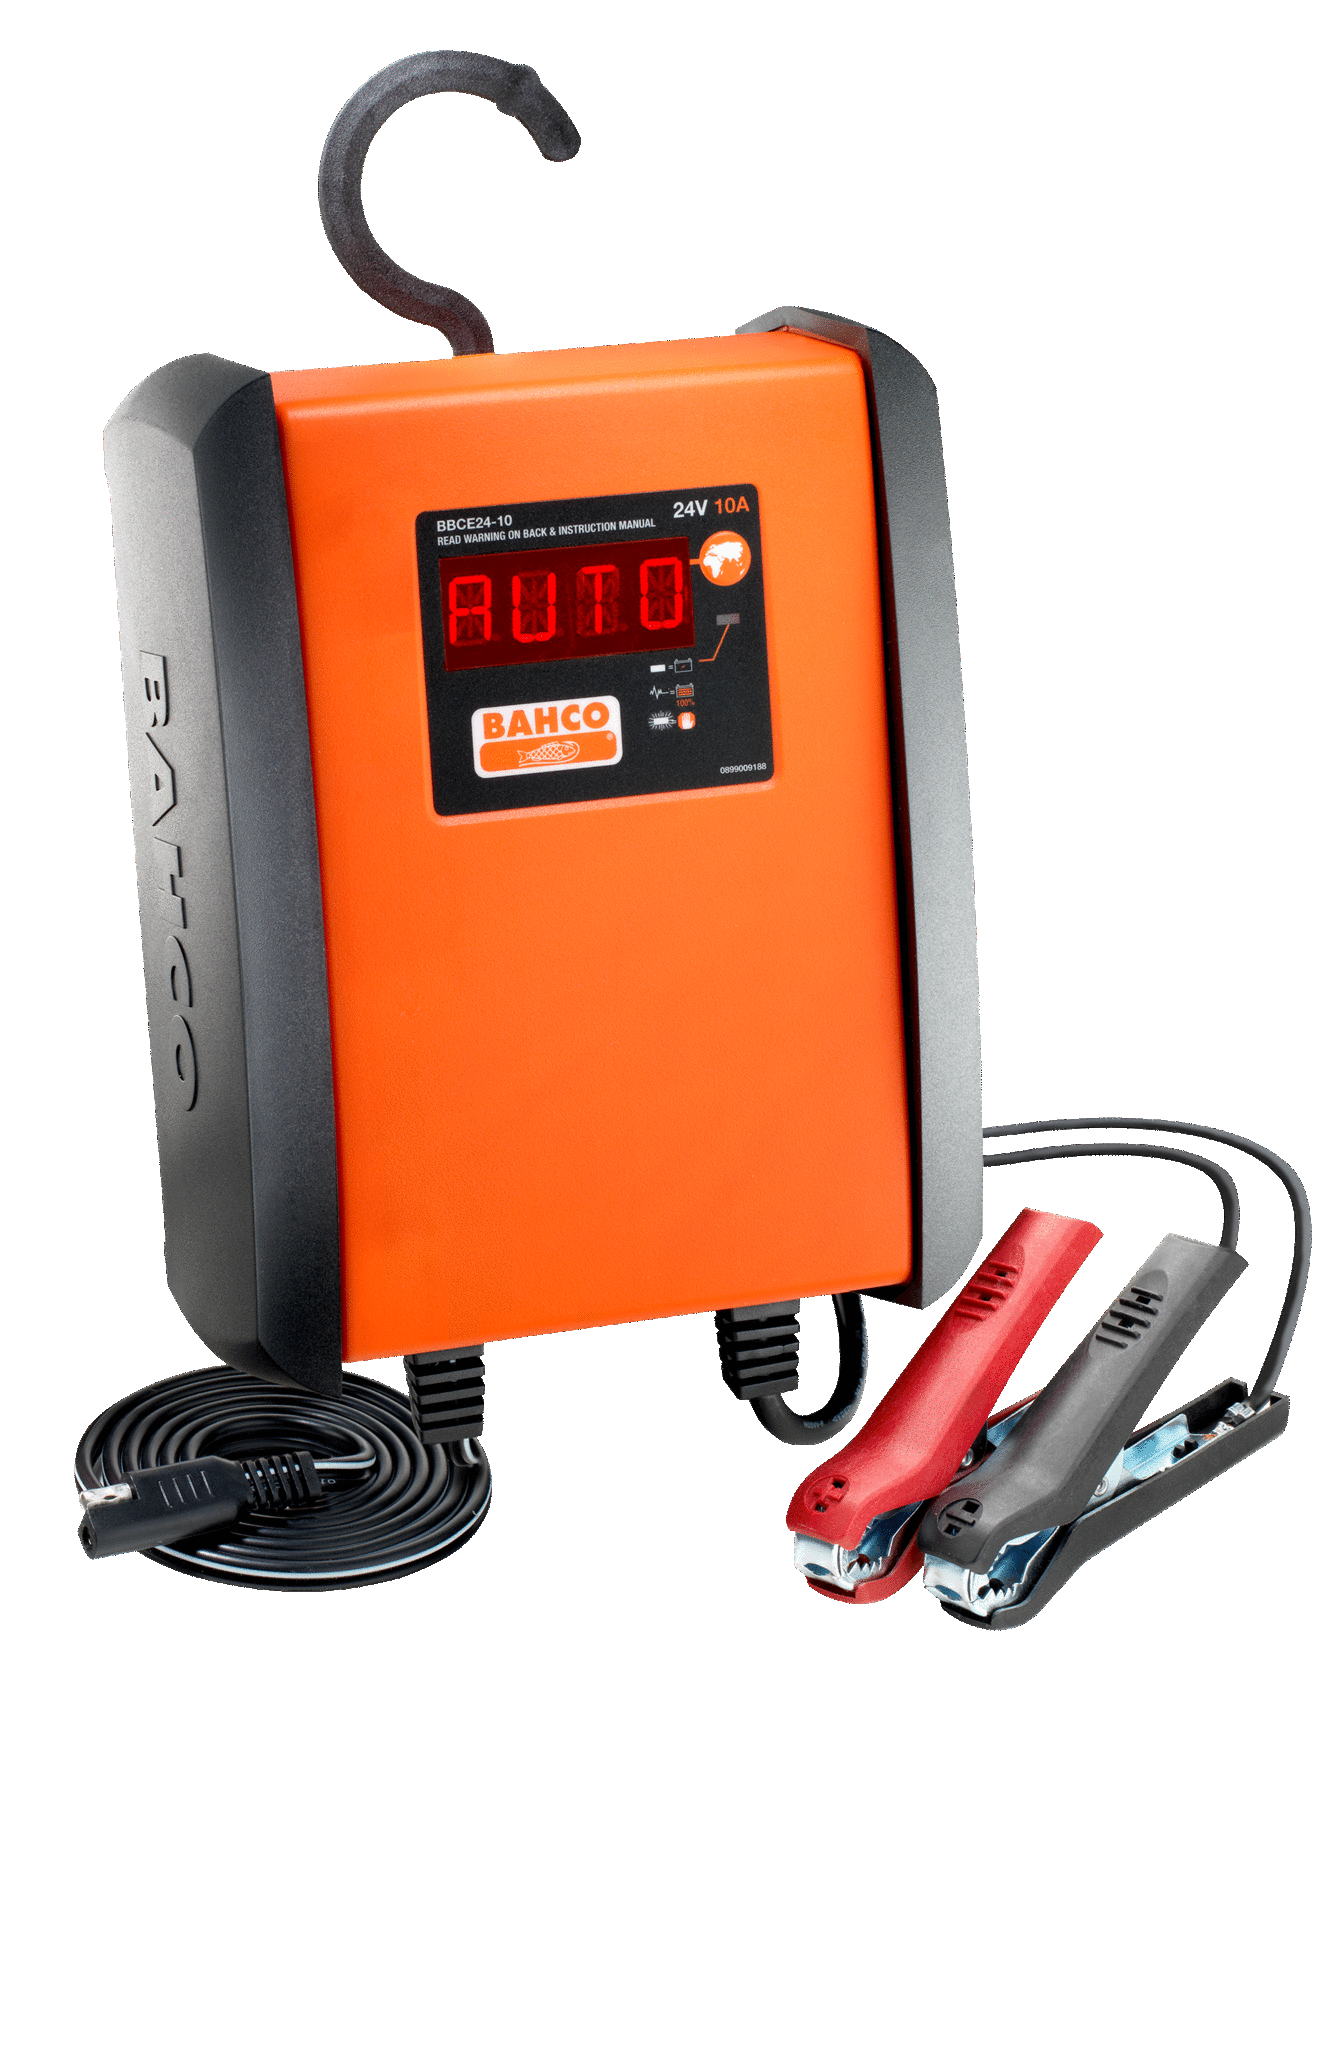 Зарядное устройство для аккумуляторов BAHCO BBCE24-10